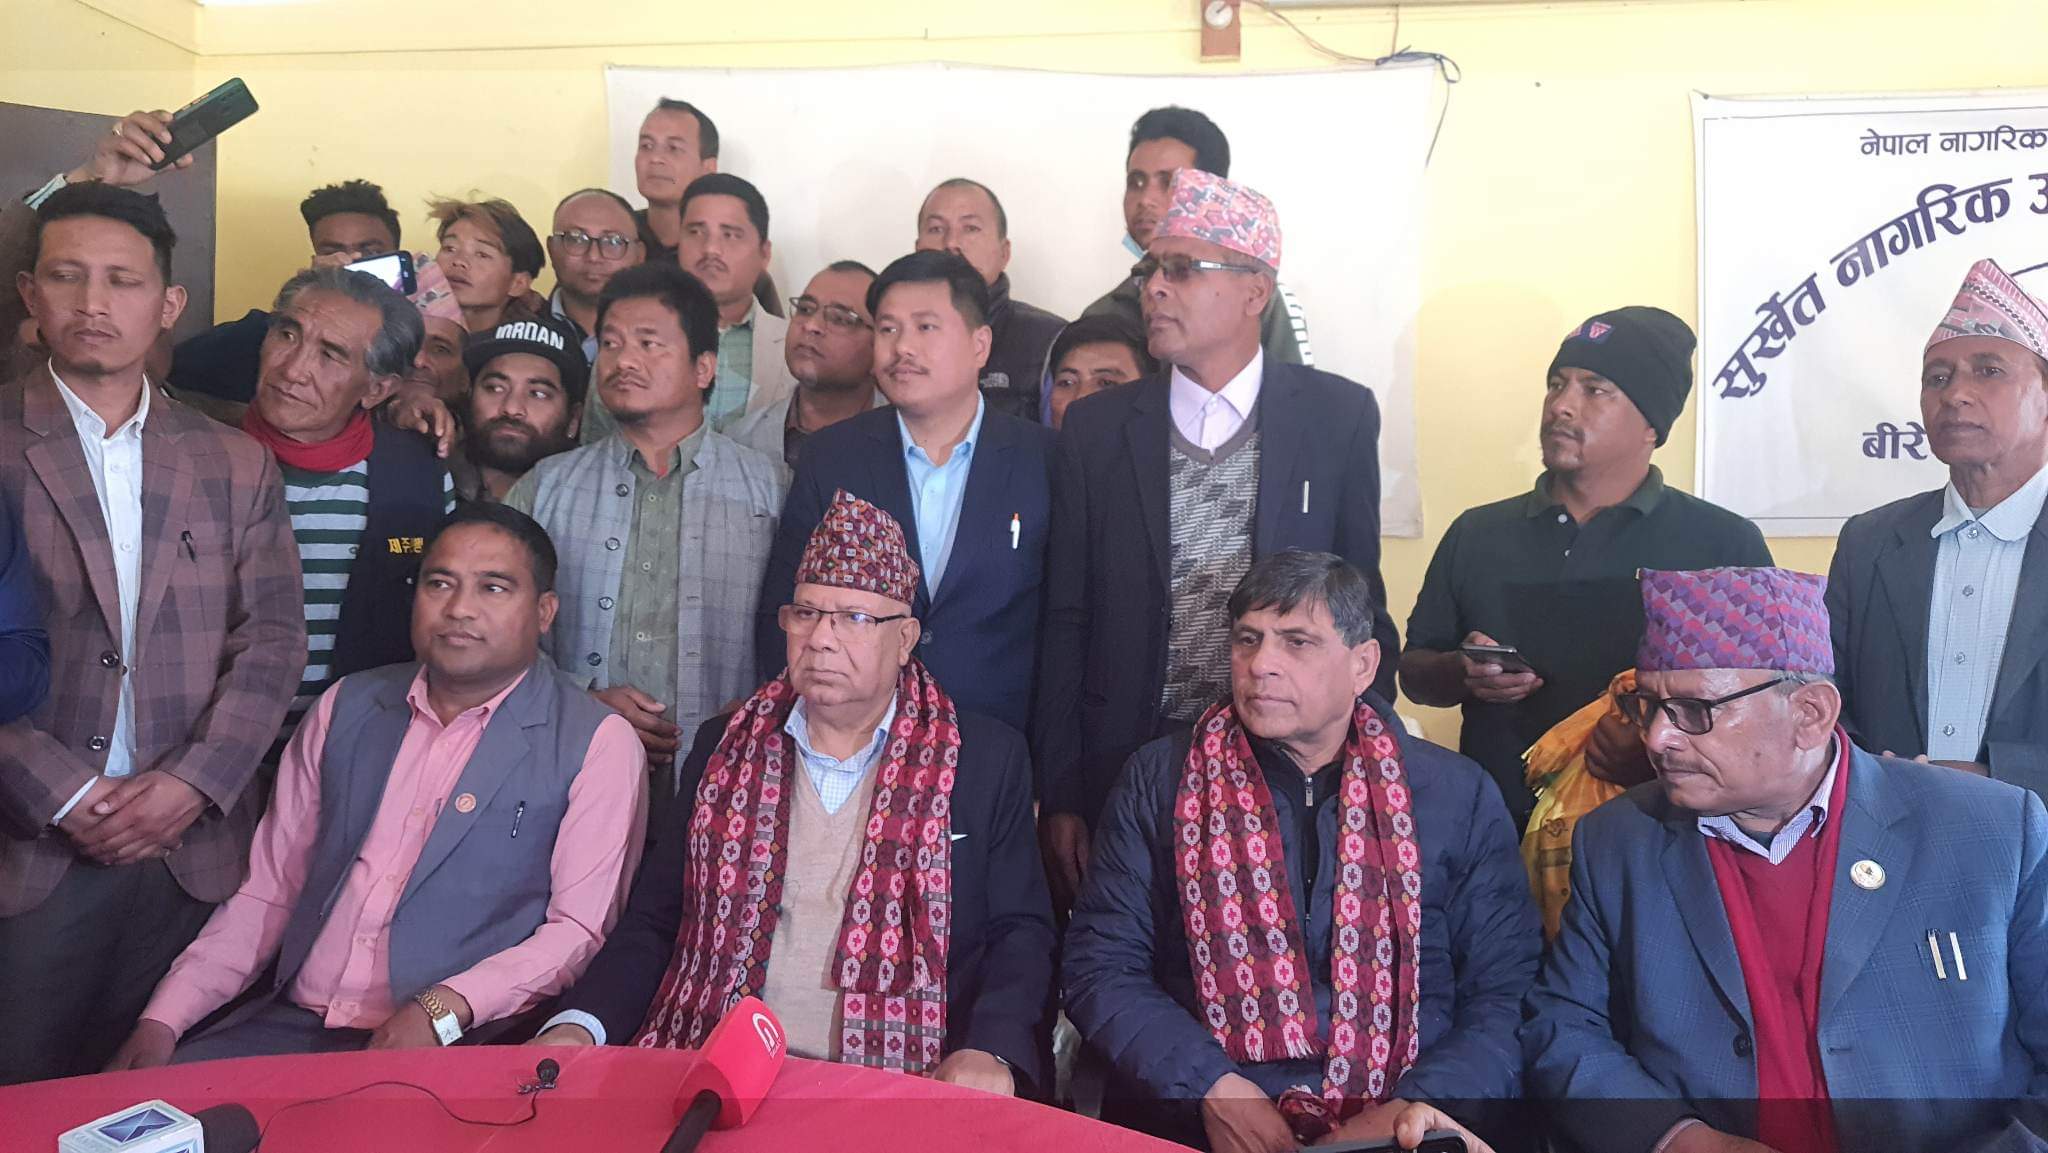 राष्ट्रियता र लाेकतन्त्रकाे पक्षमा बाेल्नेहरु एकठाउँमा छाैं : माधव नेपाल